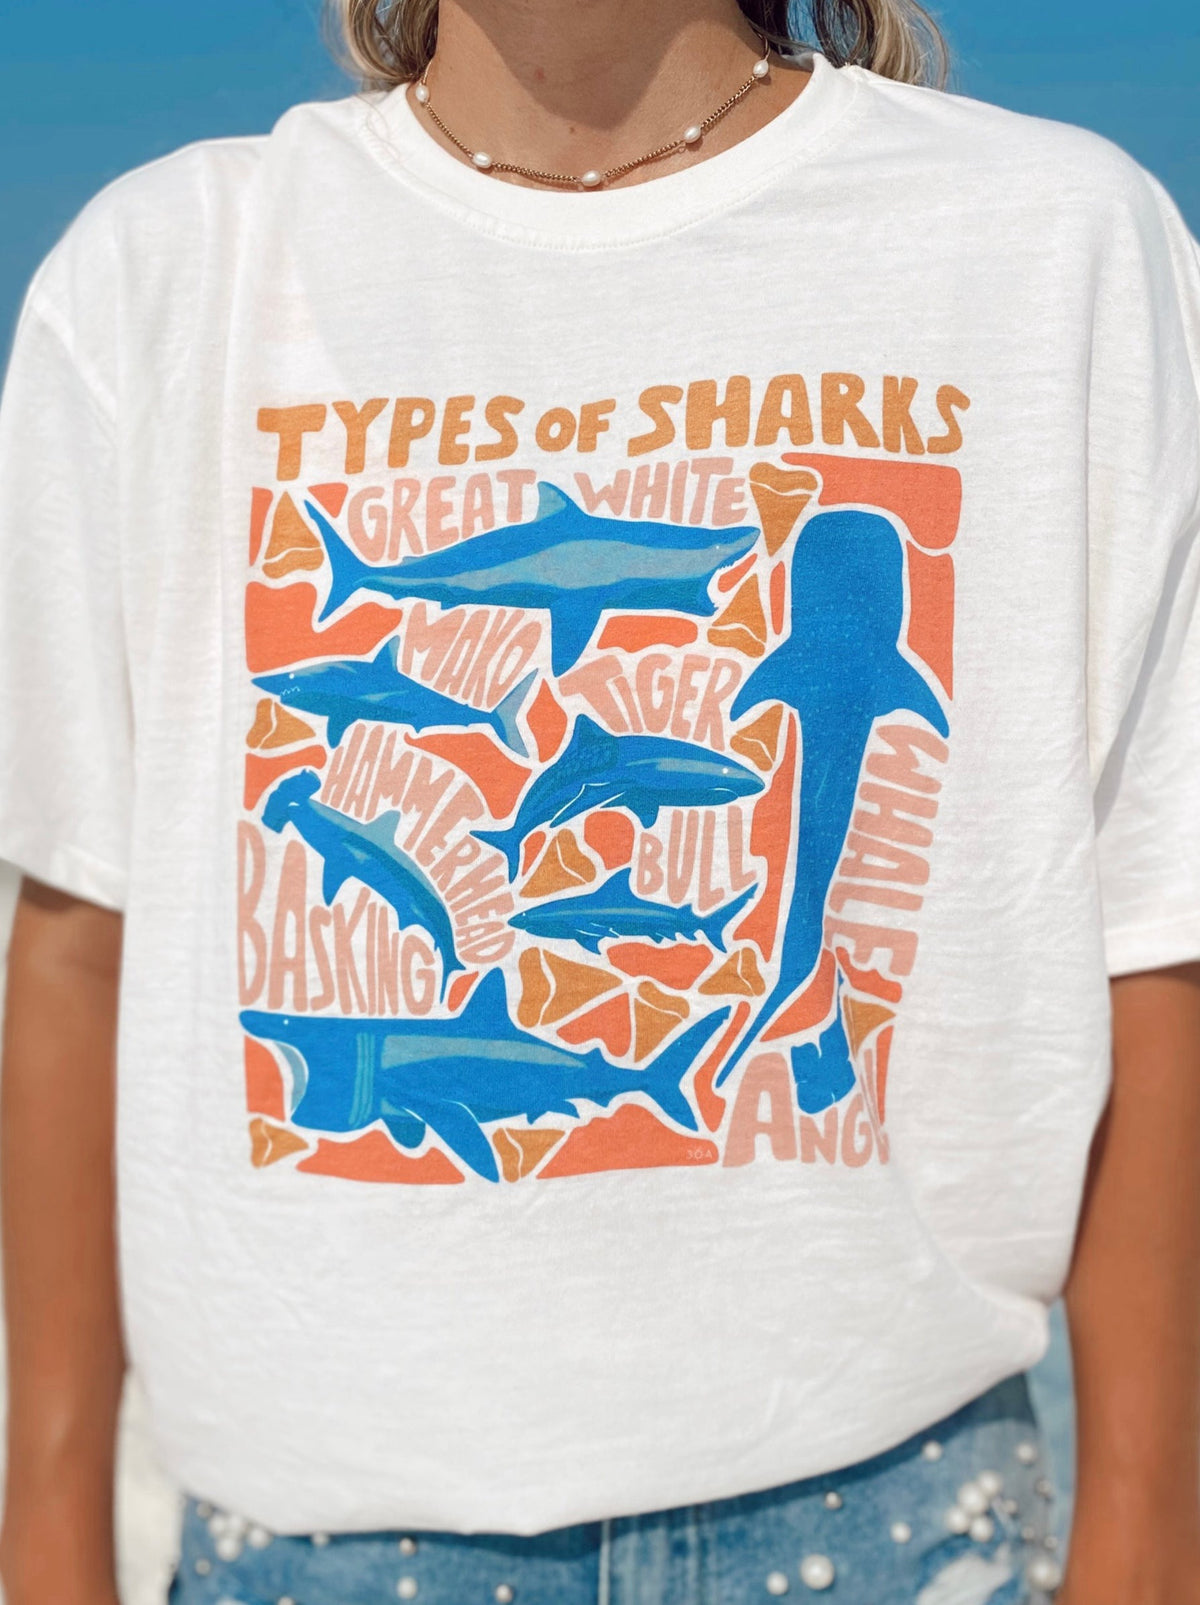 Shark Types T-Shirt